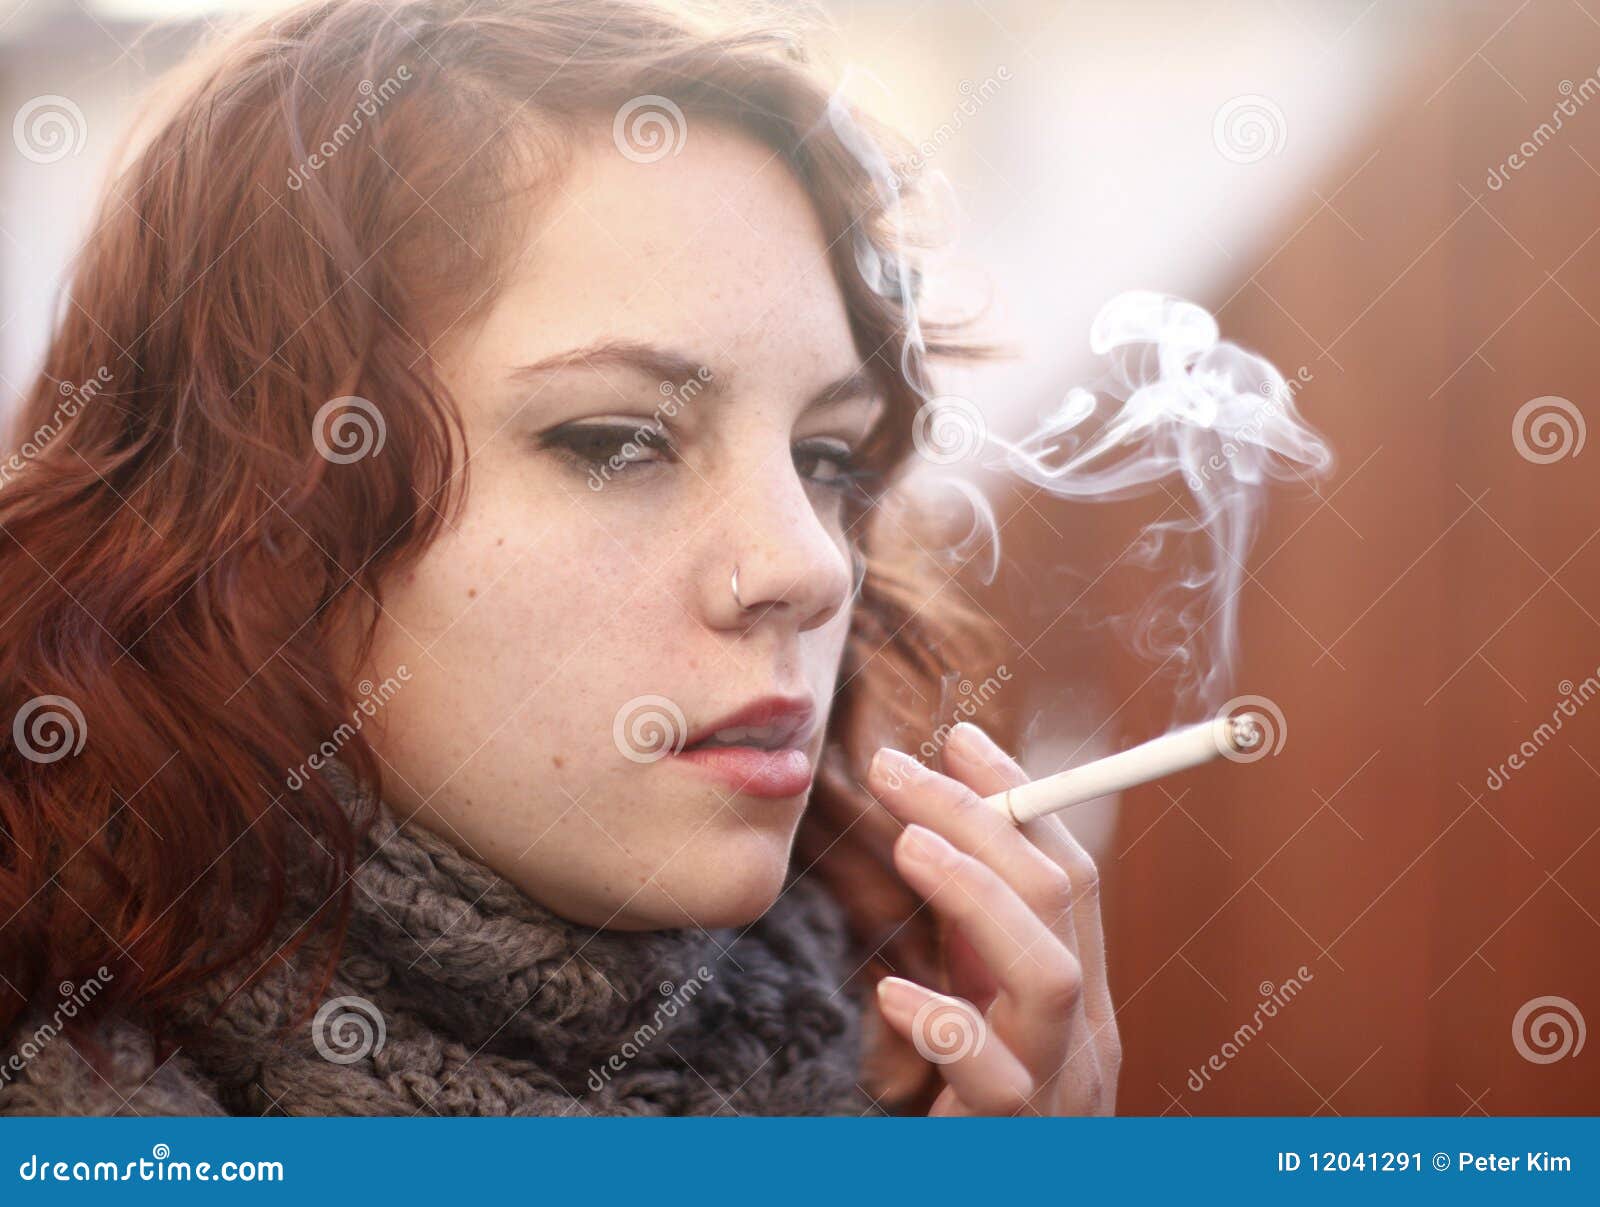 抽烟女人唯美图片桌面壁纸 -桌面天下（Desktx.com）